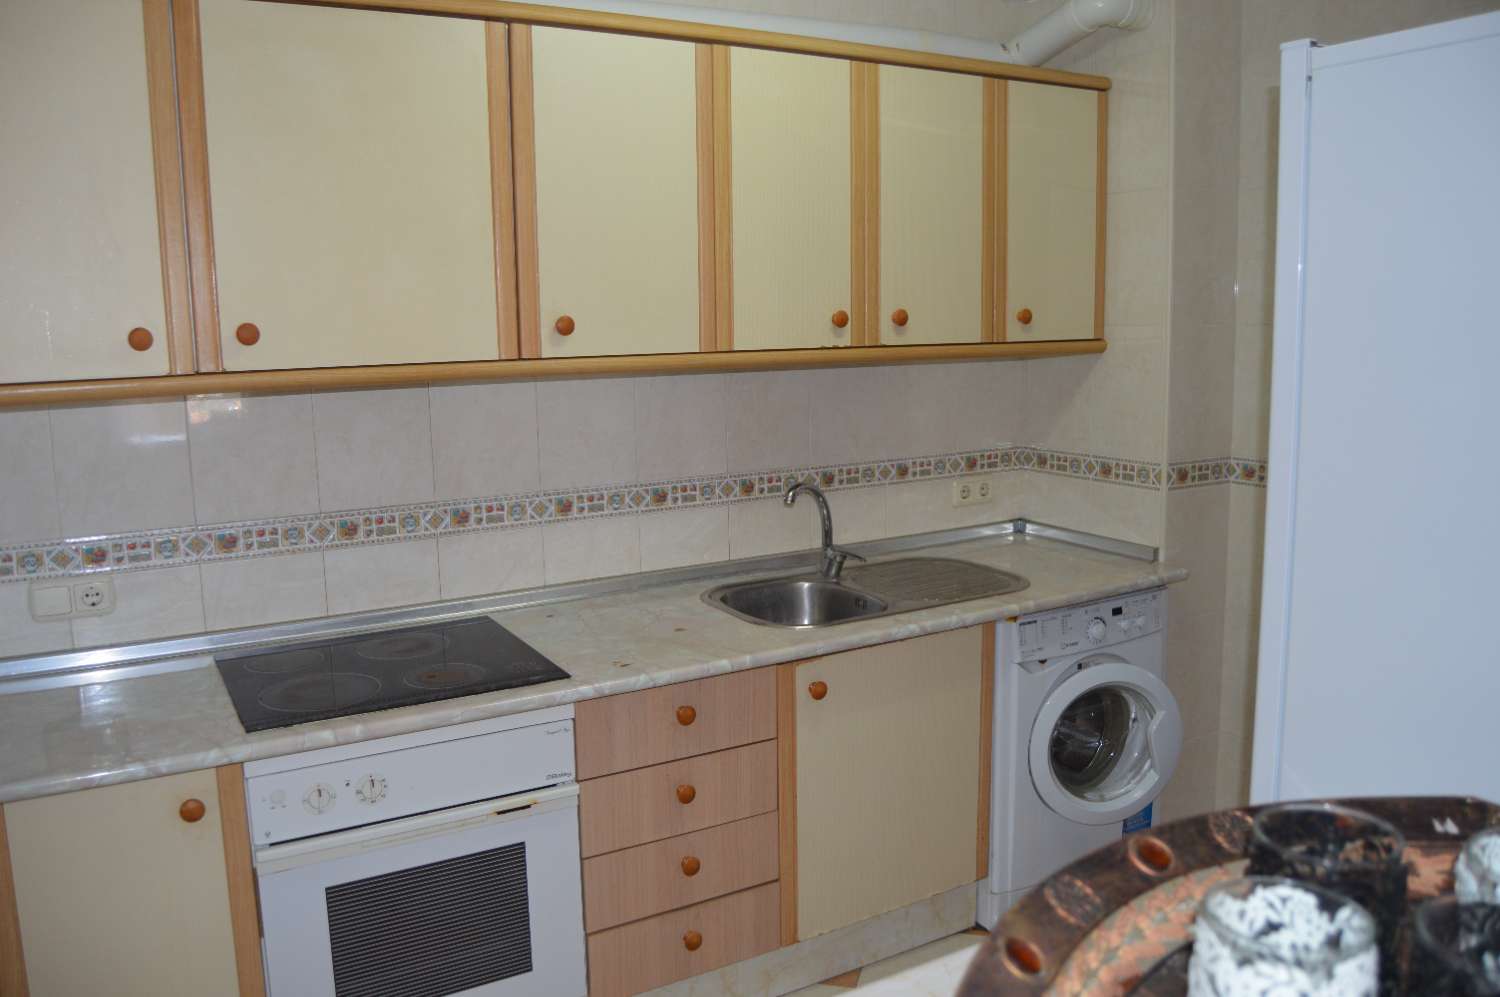 Se vende piso de 3 dormitorios en Fuengirola, zona Sohail.